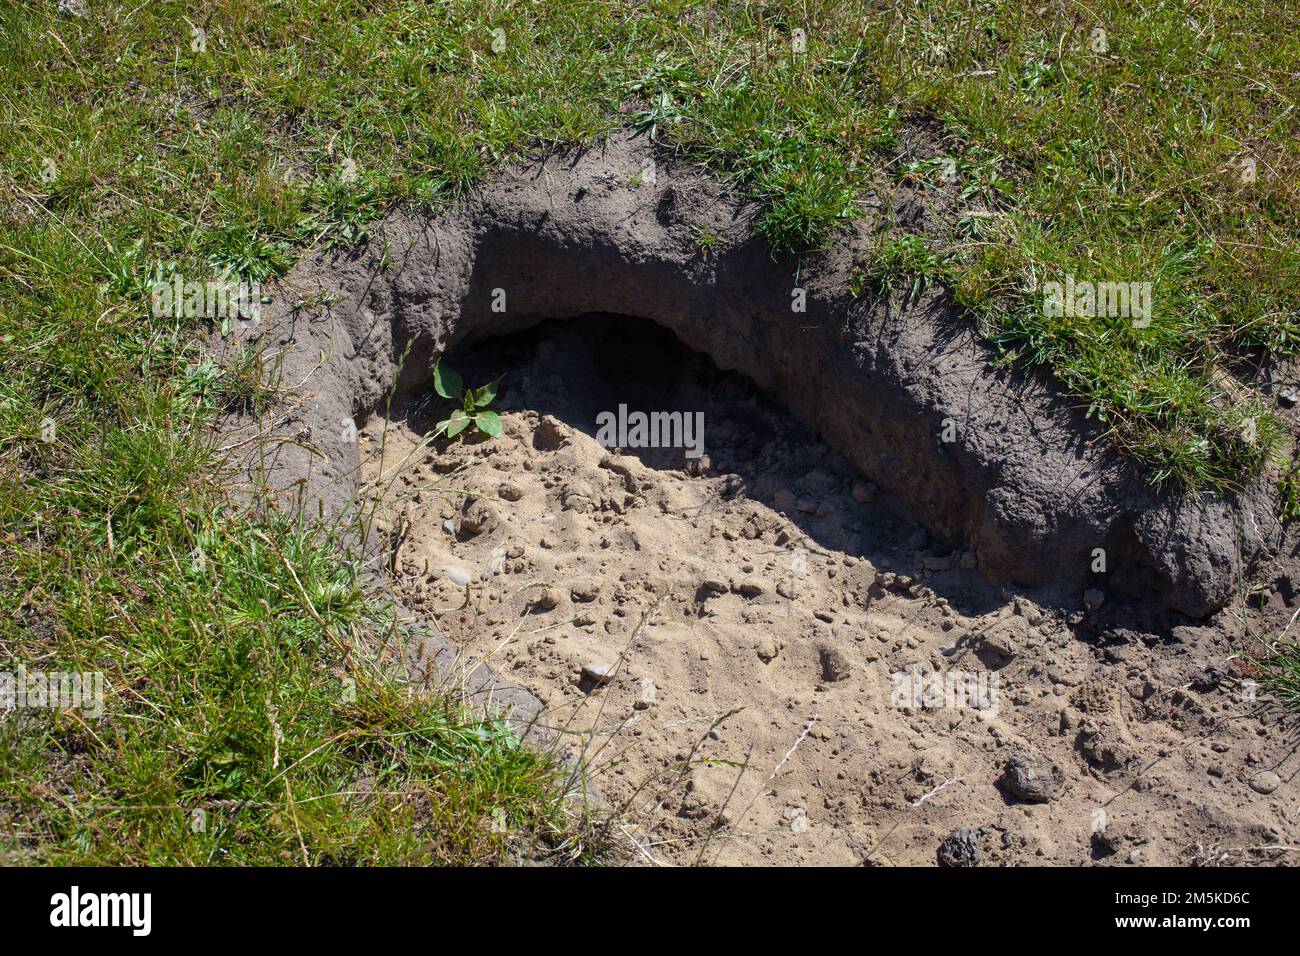 Un regard sur la vie en Nouvelle-Zélande: Le lapin s'enterrer dans un enclos. Lapin warren. Banque D'Images